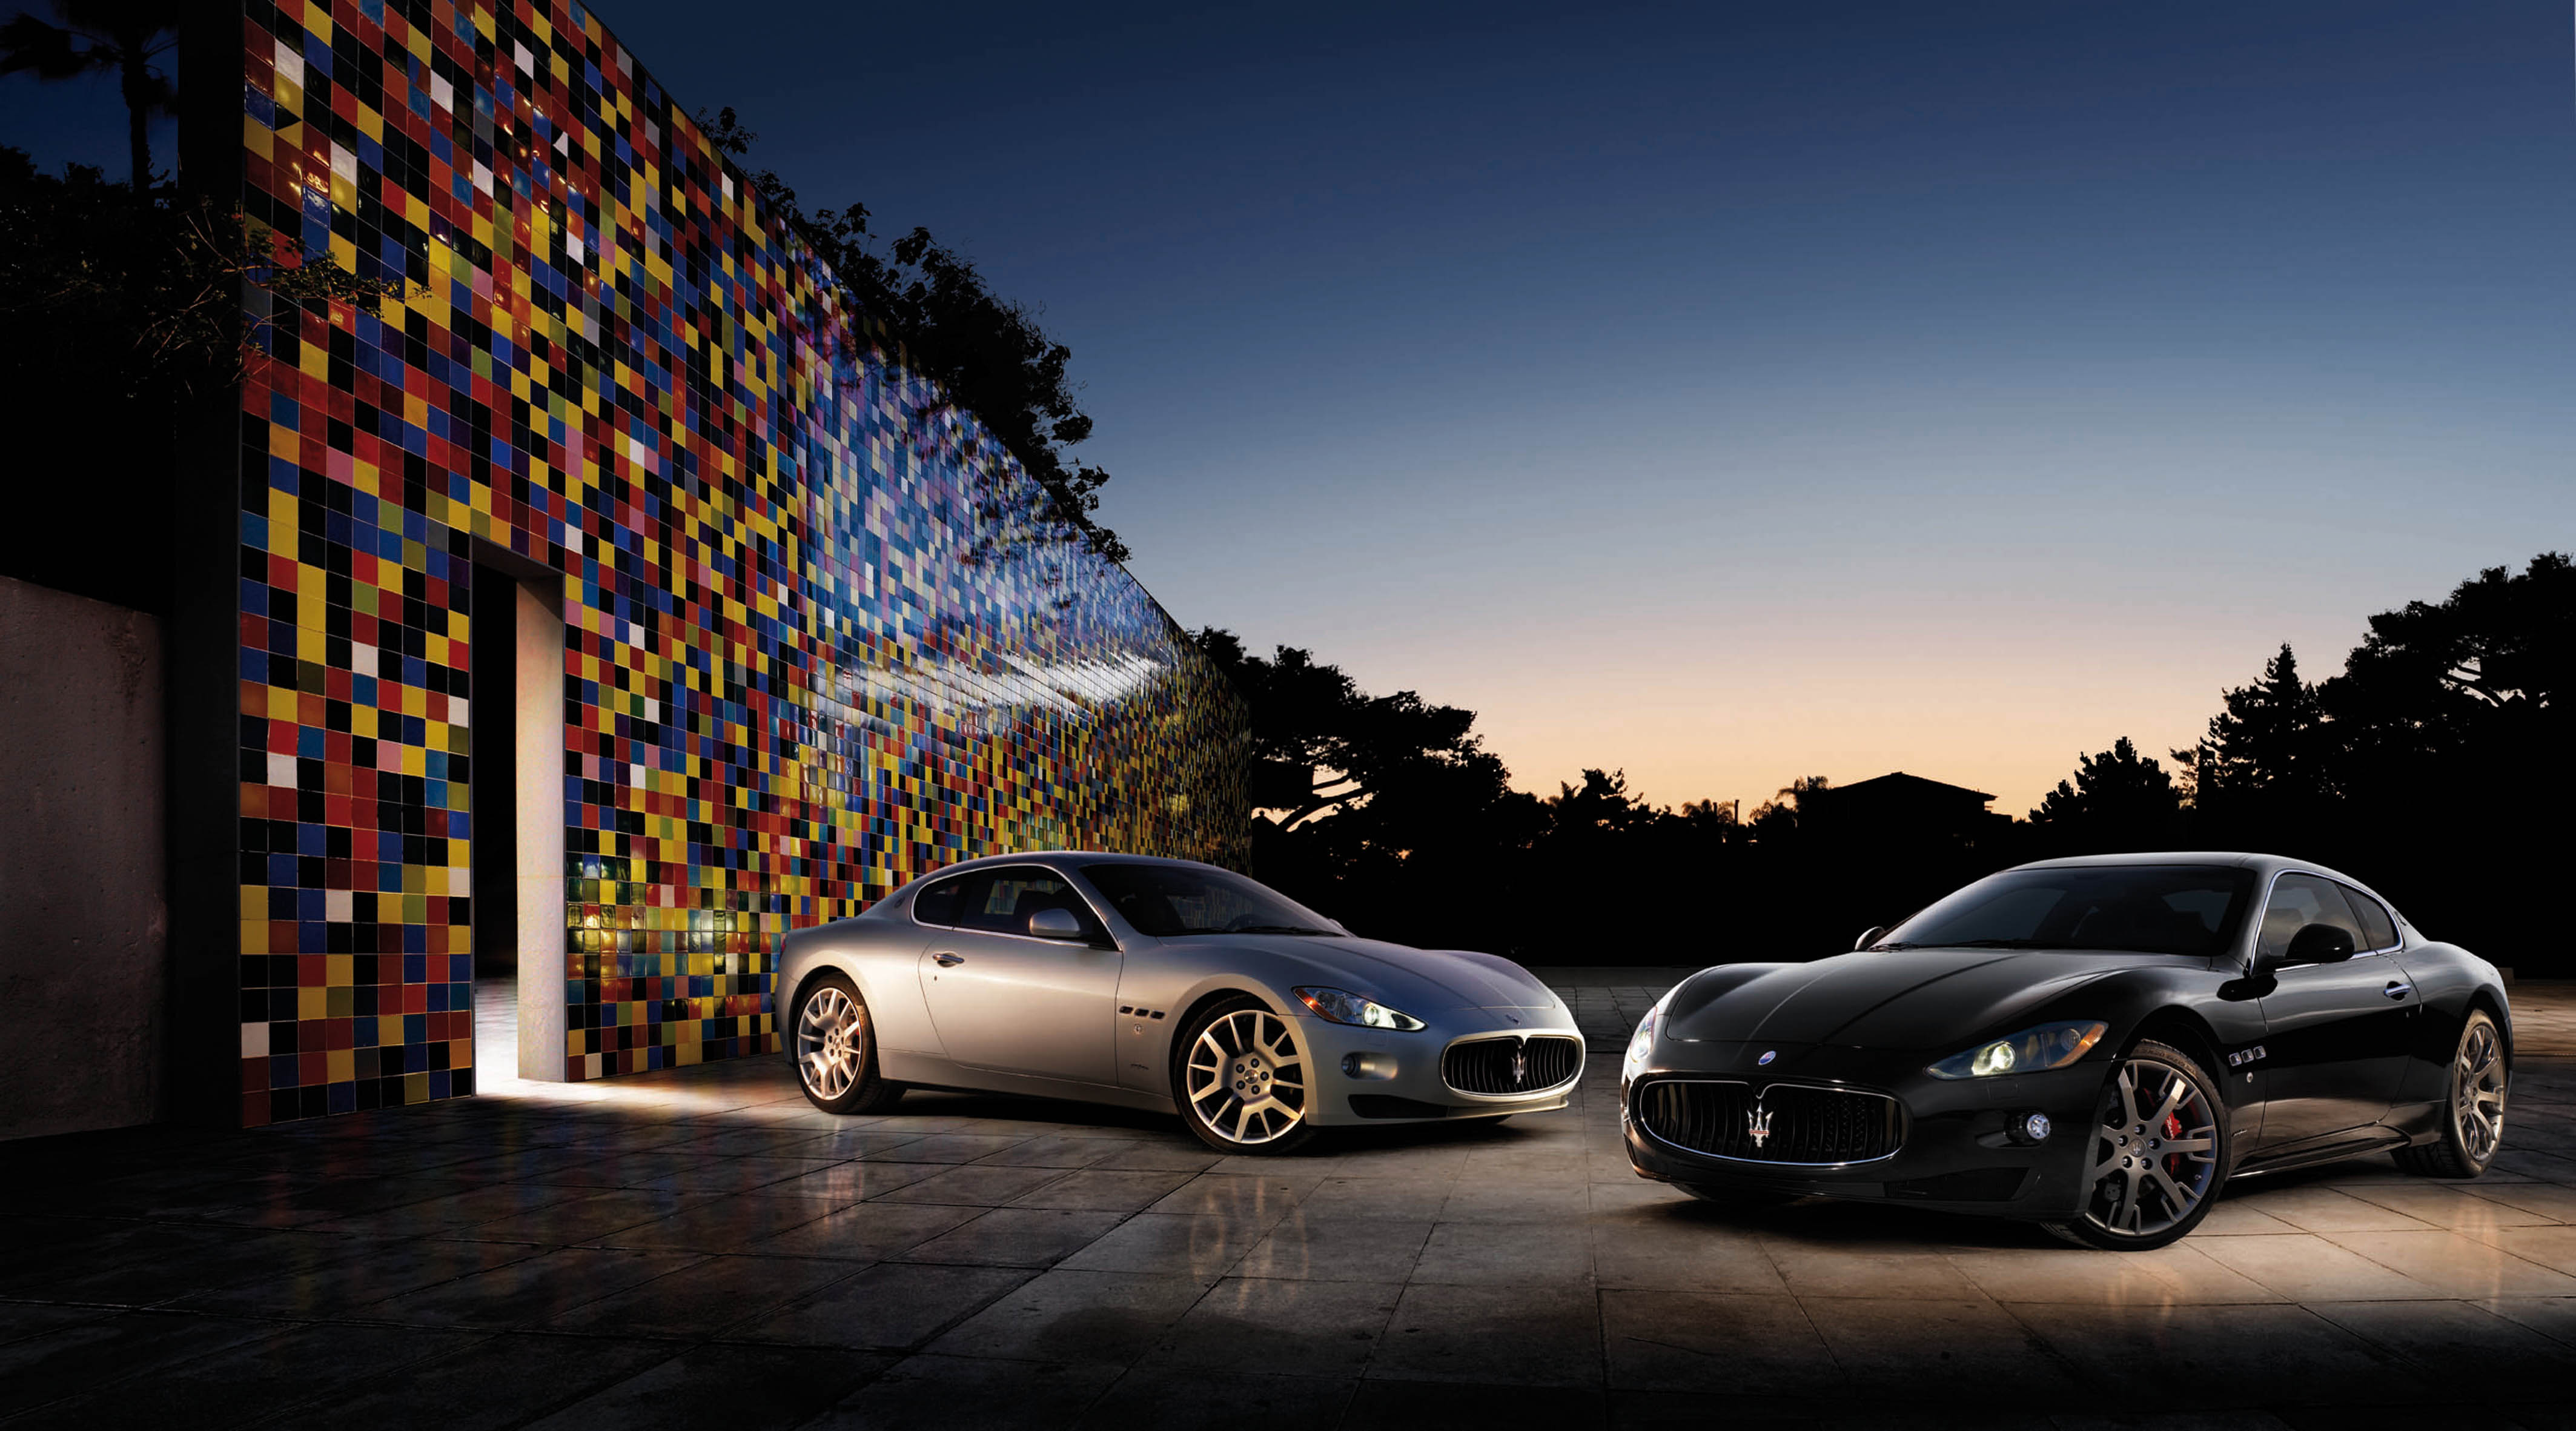 Maserati+granturismo+wallpaper